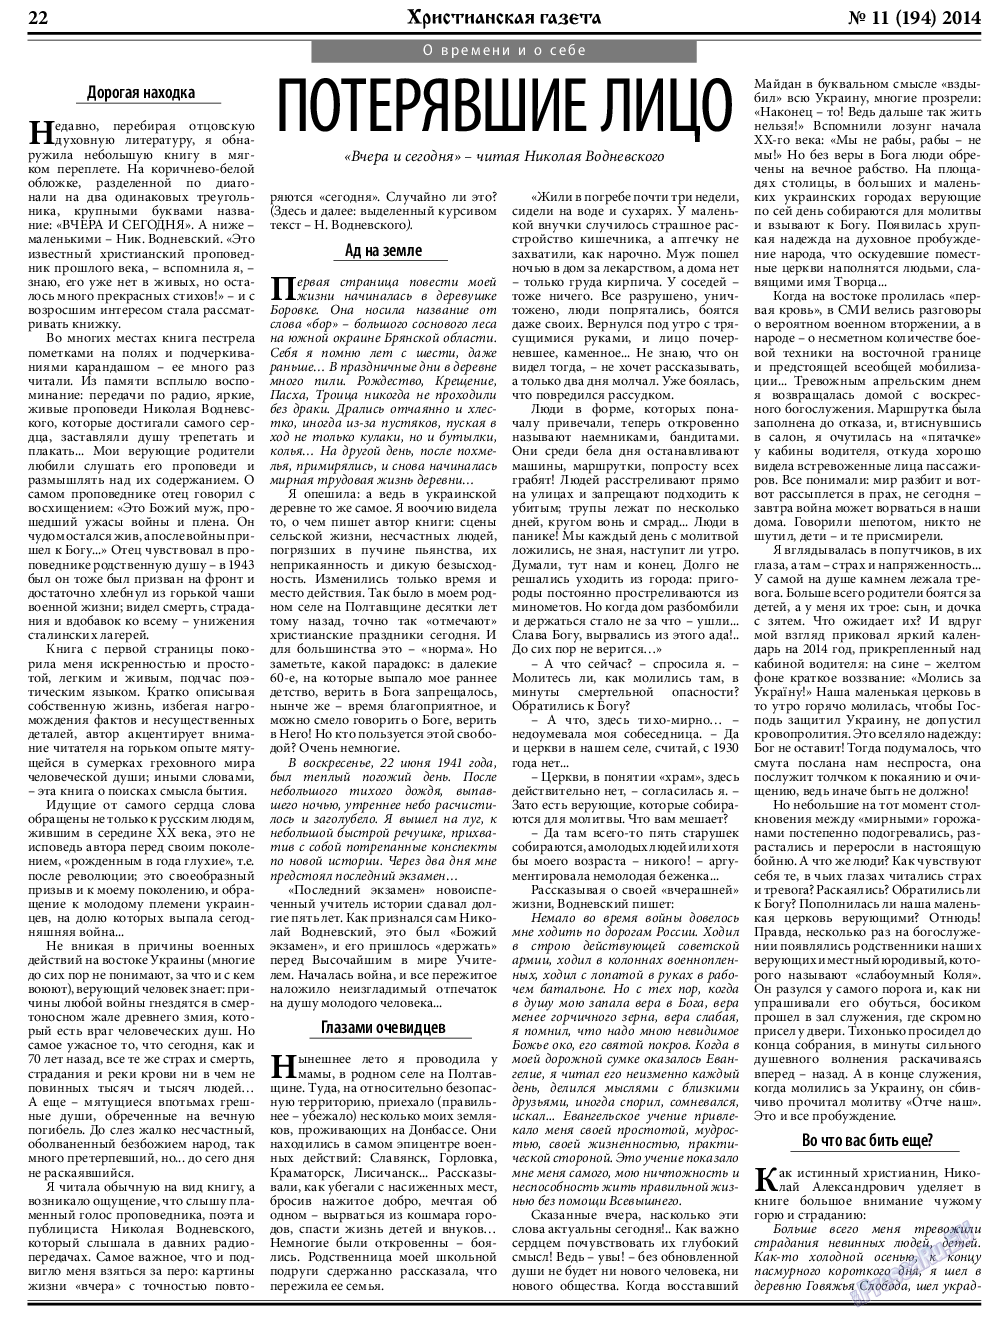 Христианская газета, газета. 2014 №11 стр.30